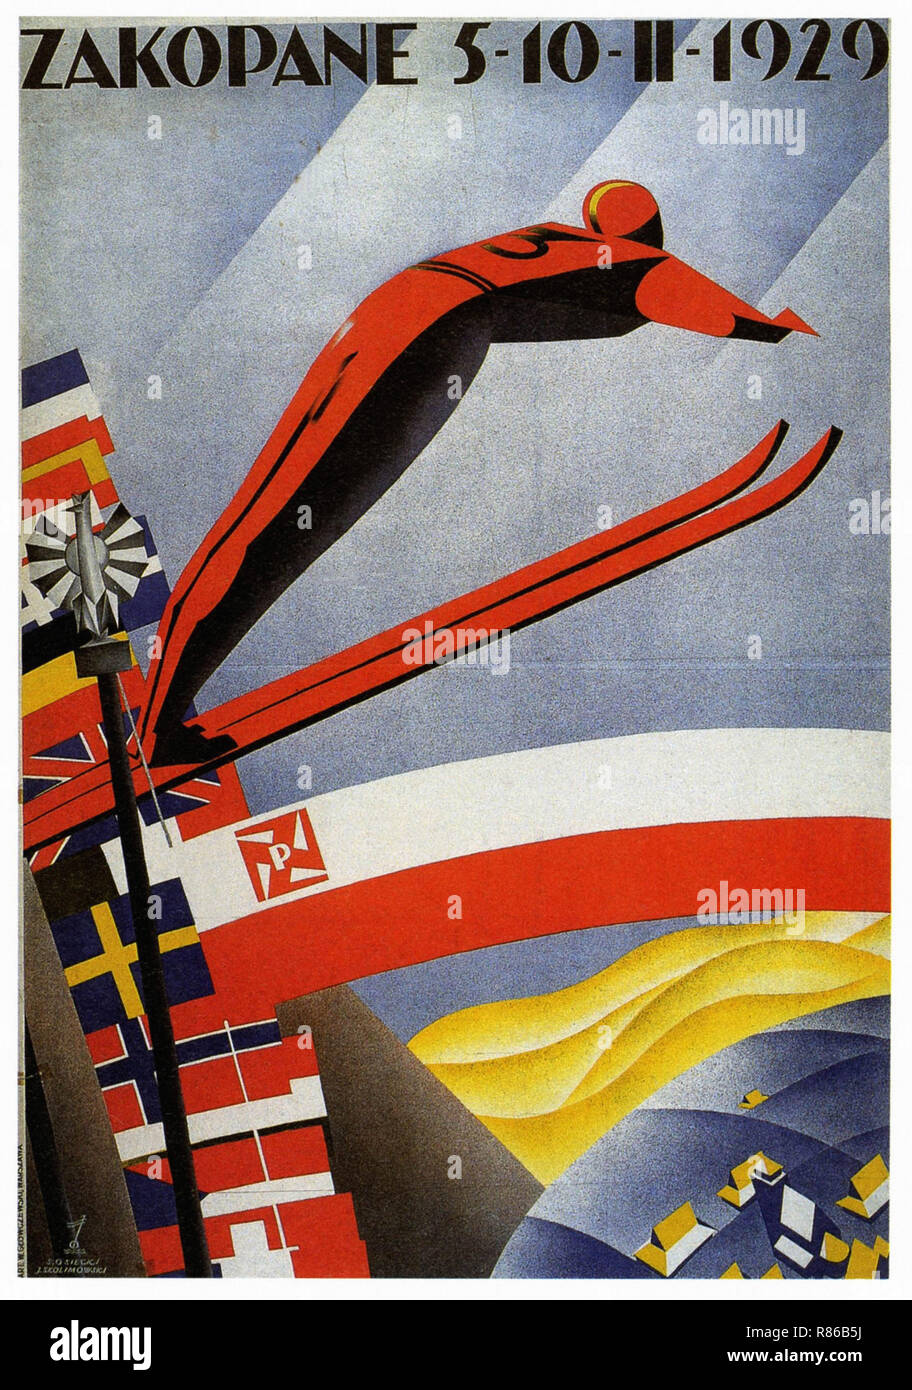 1929 Festival de ski de Zakopane - Affiche publicitaire ancienne Banque D'Images